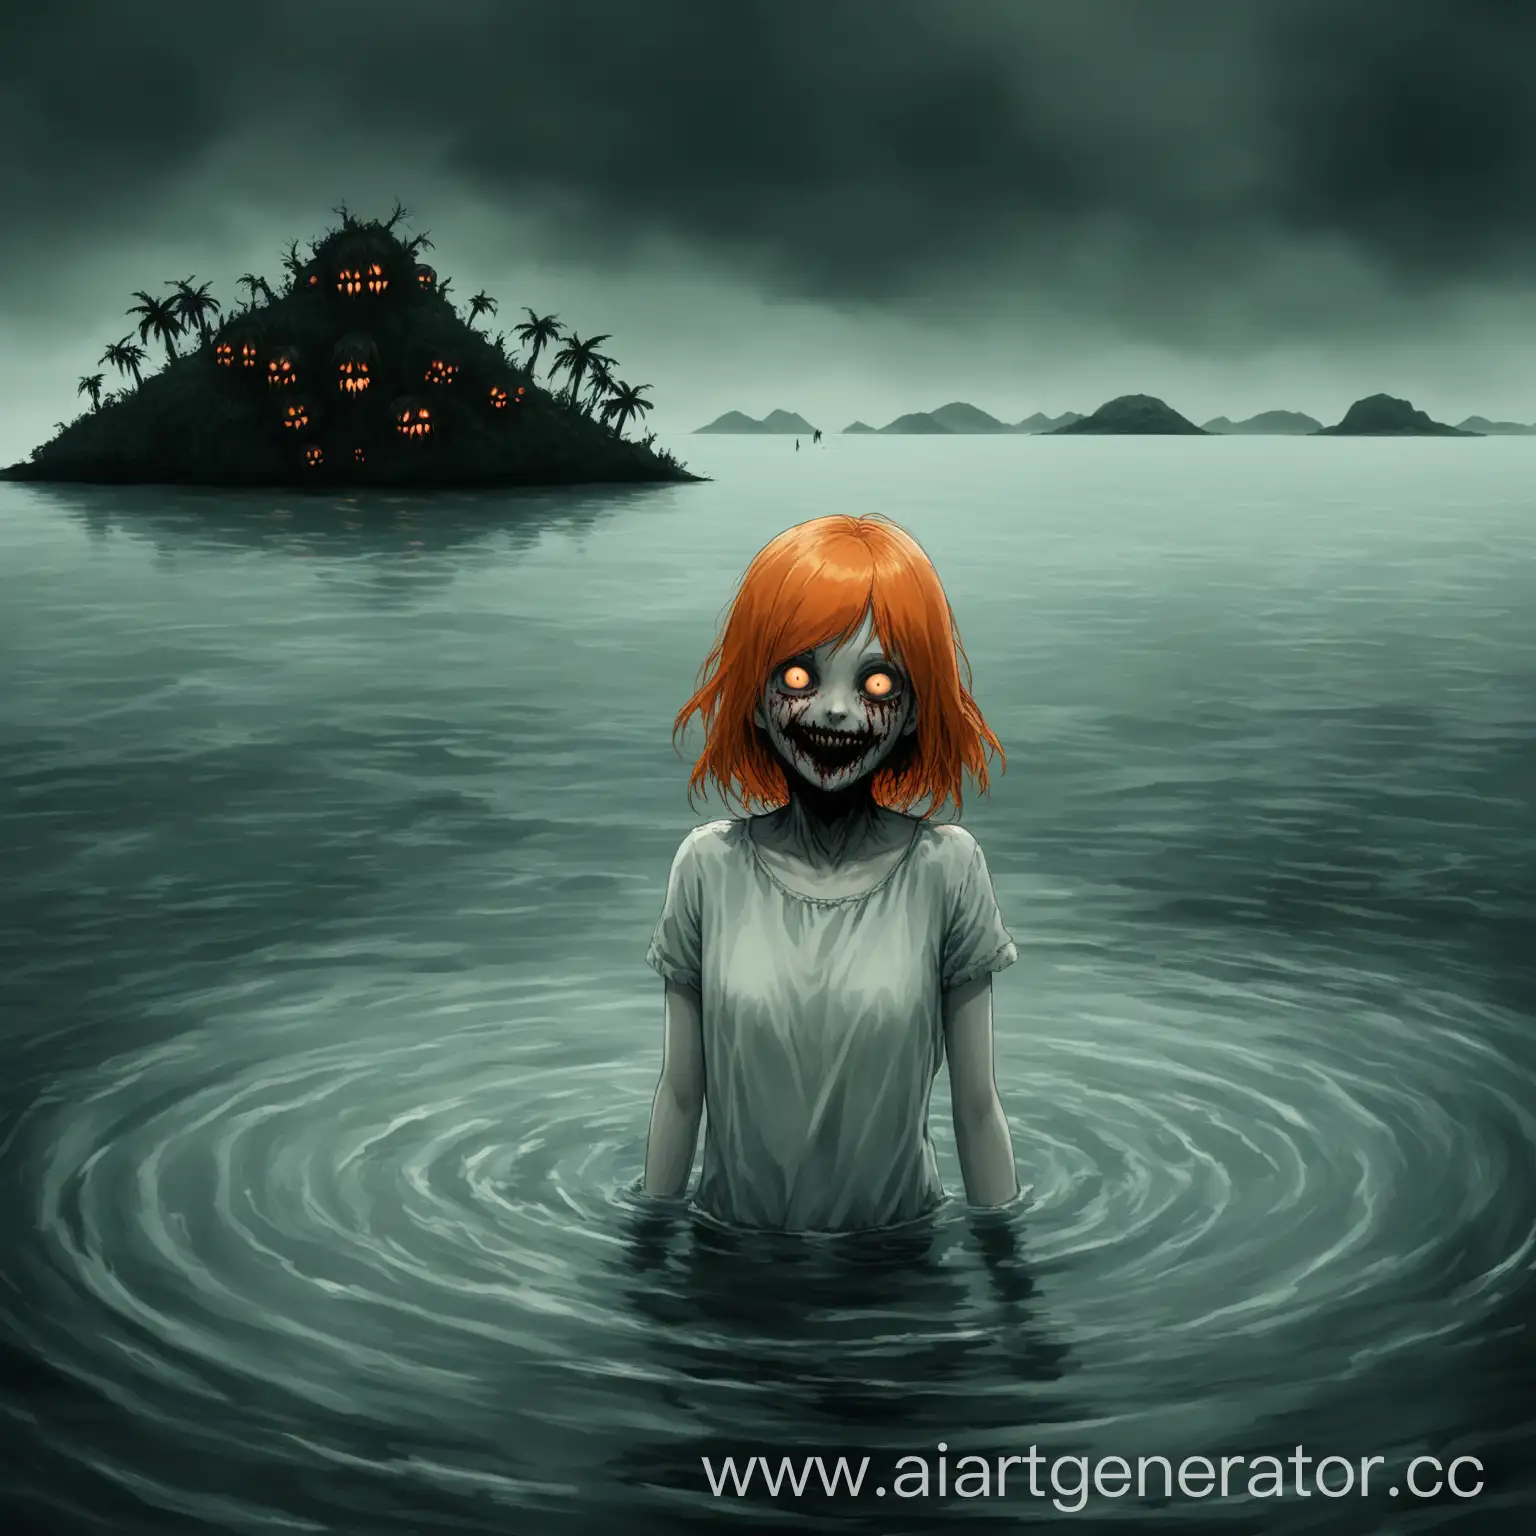 Девушка с оранжевыми волосами смотрит на меня. Она стоит в воде, а на заднем фоне виден необитаемый остров. Добавь немного хоррора. Она должна странно улыбаться